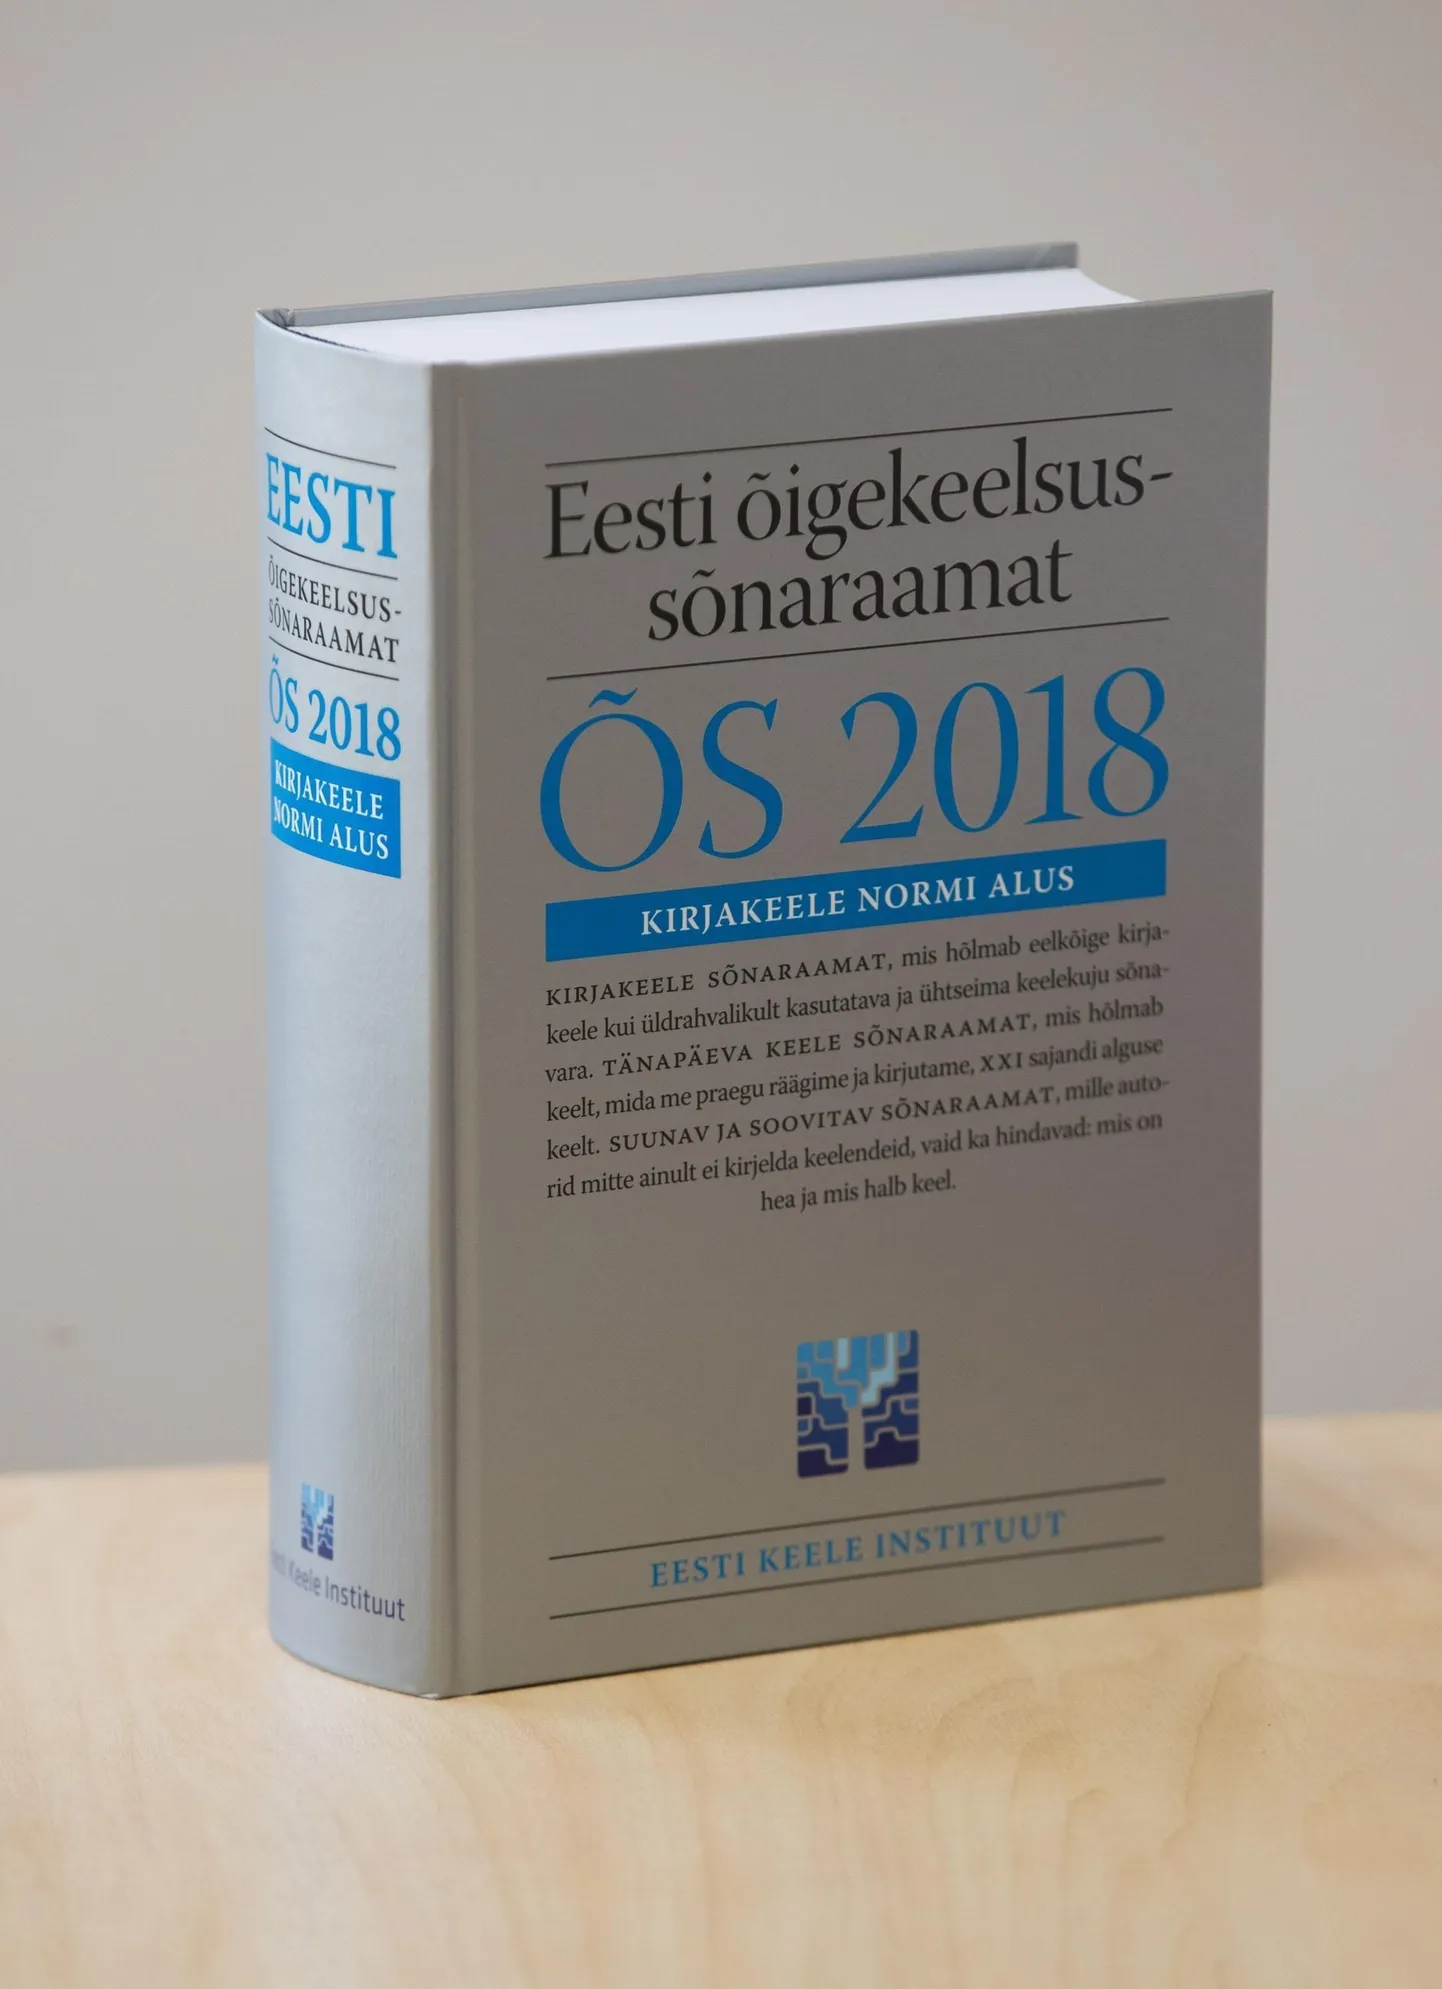 Eesti keel ja õigekeelsussõnaraamat said taas väärikat täiendust.